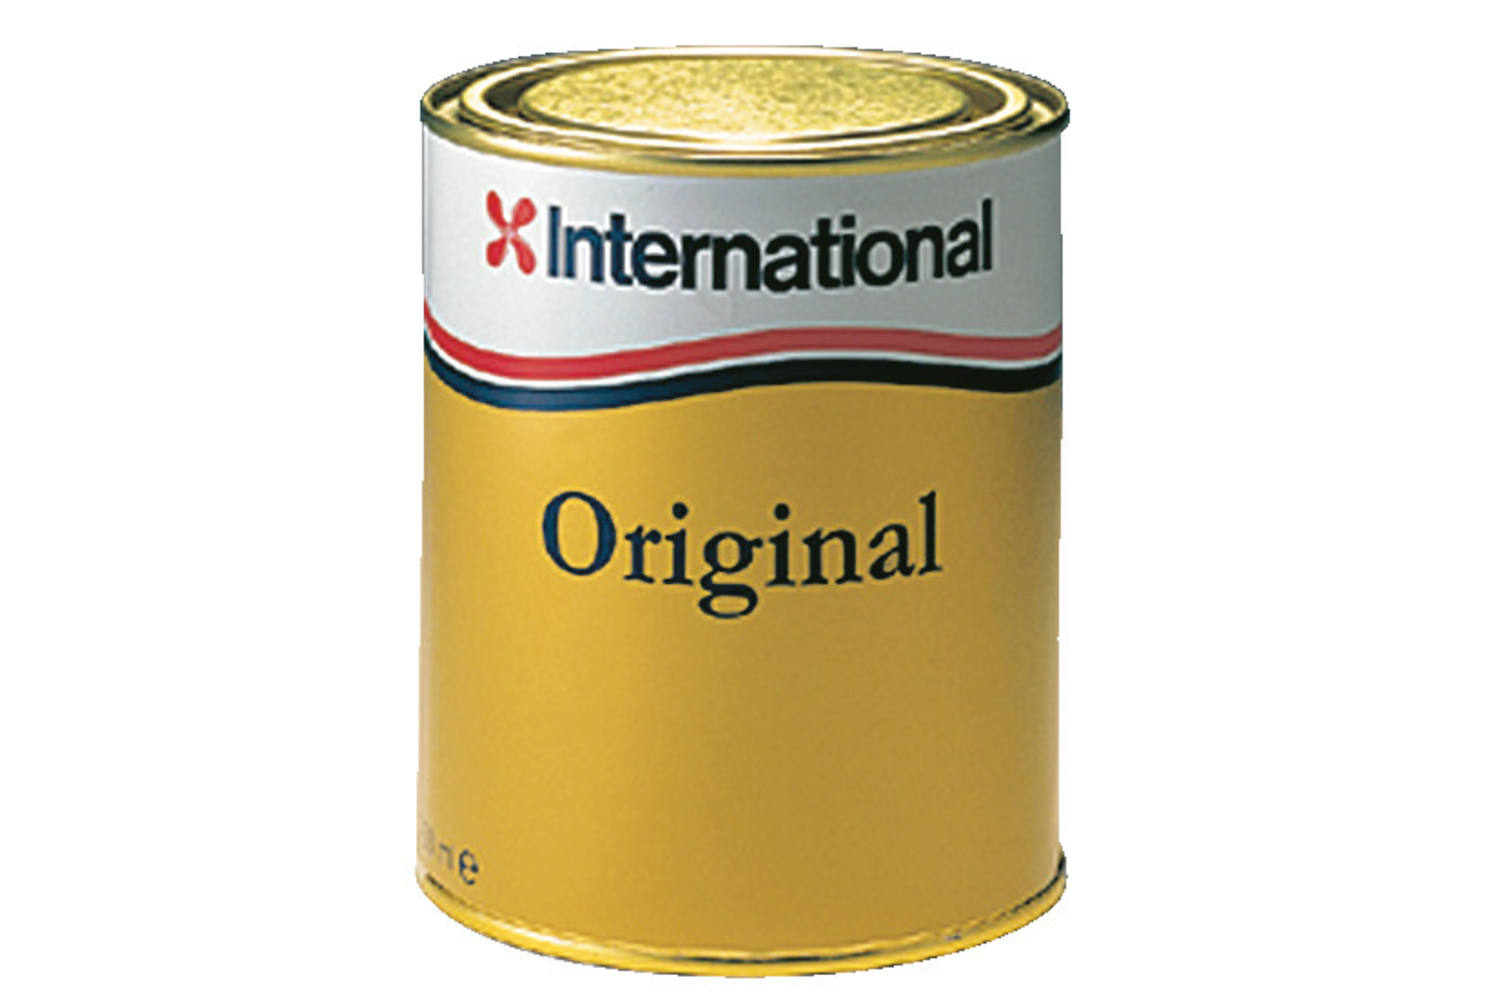 International Original gloss varnish - 0.75ltr